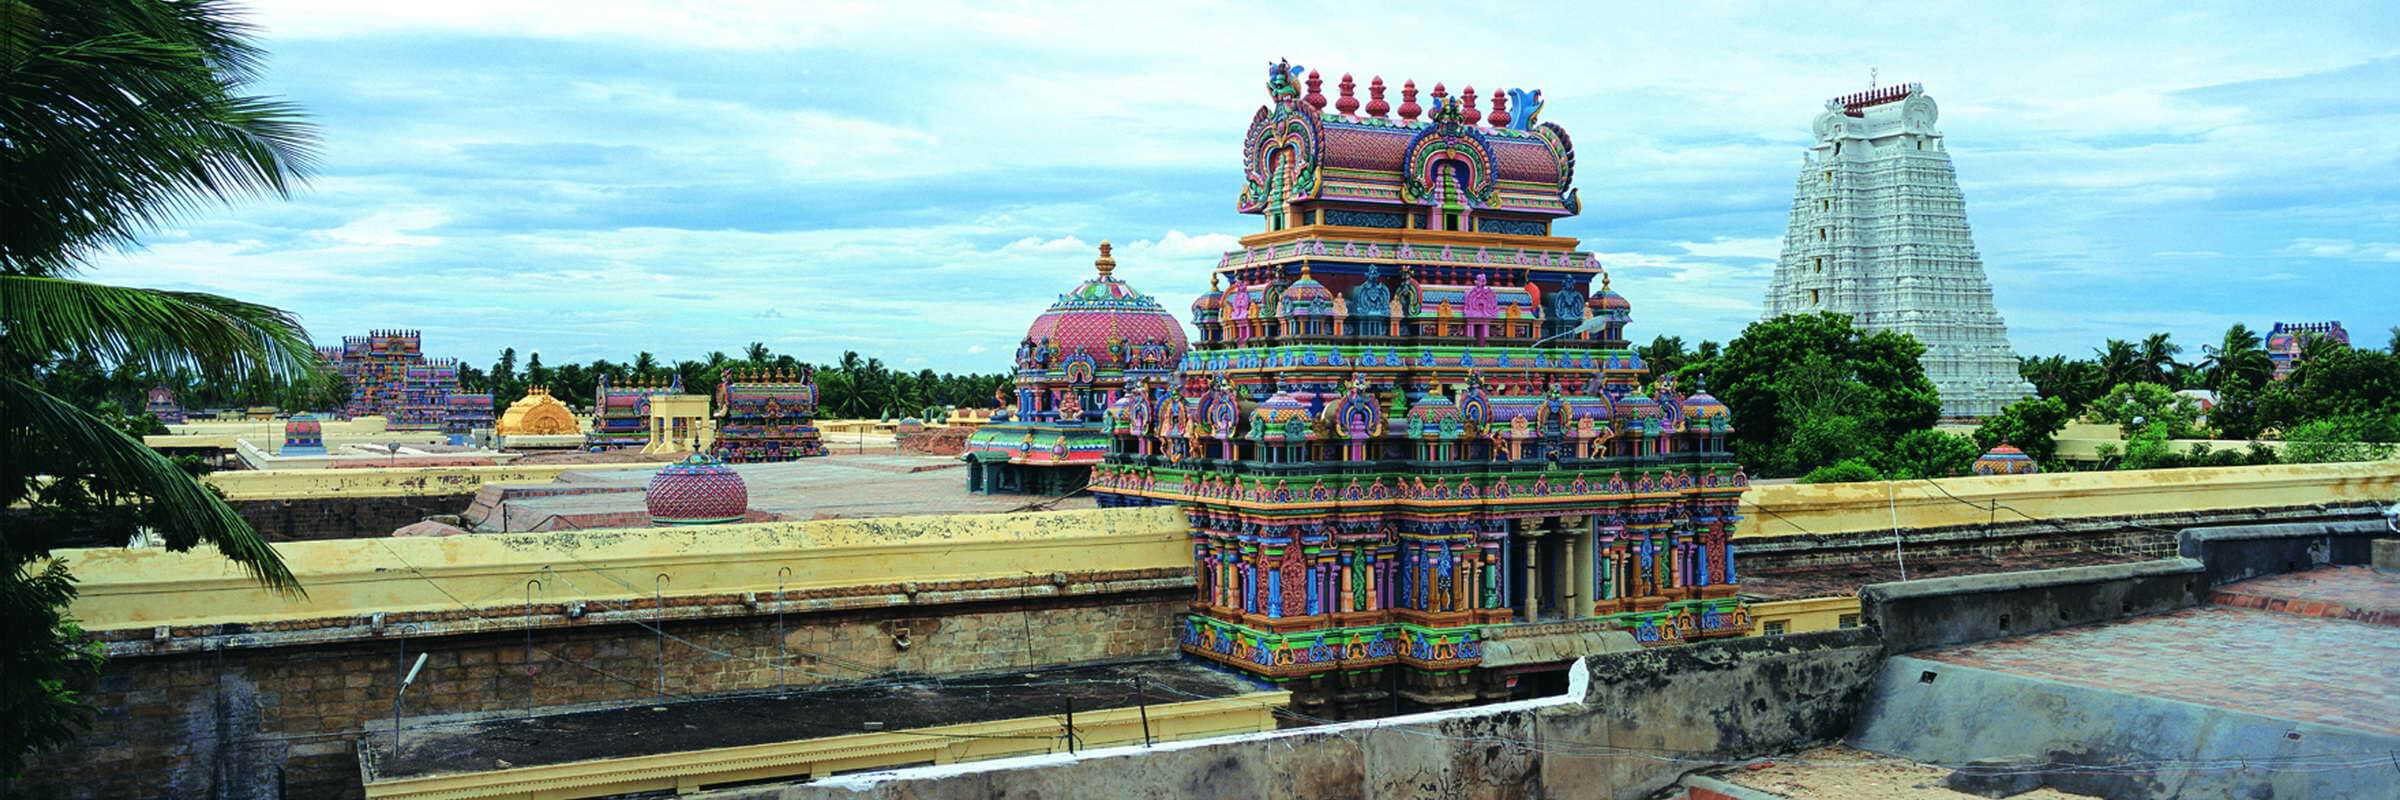 Der Meenakshi Tempel in Madurai zählt zu den größten und beeindruckendsten Hindu-Tempeln und gilt als Südindiens wichtigstes hinduistisches Bauwerk.